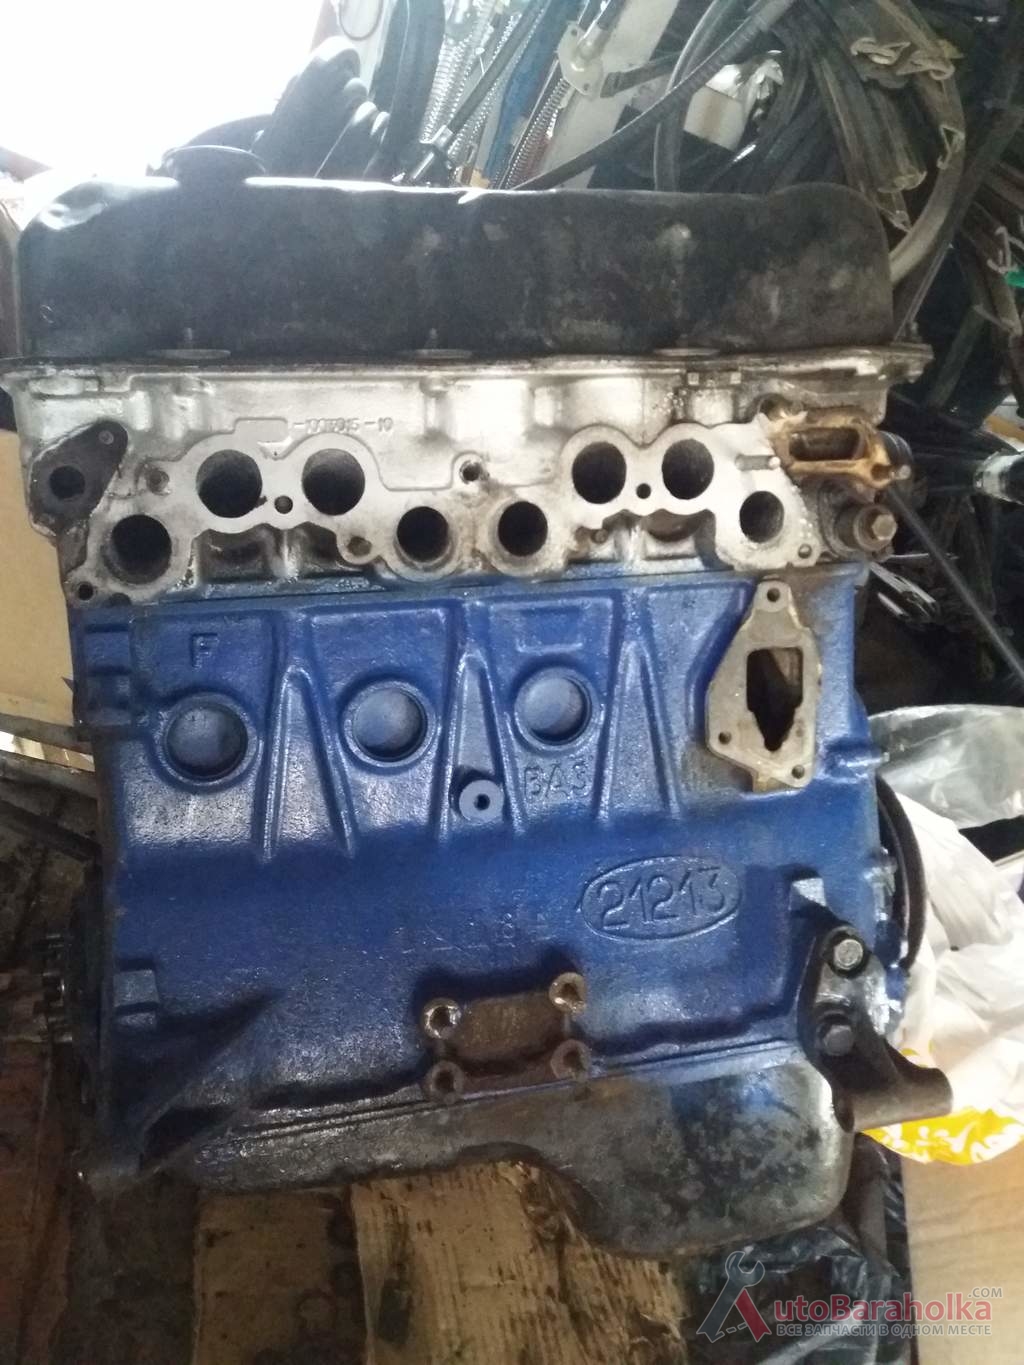 Продам Двигатель Мотор ВАЗ 21213 2121 2101 2103 2106 из Польши с рабочей машины, малый пробег. Гарантия Херсон